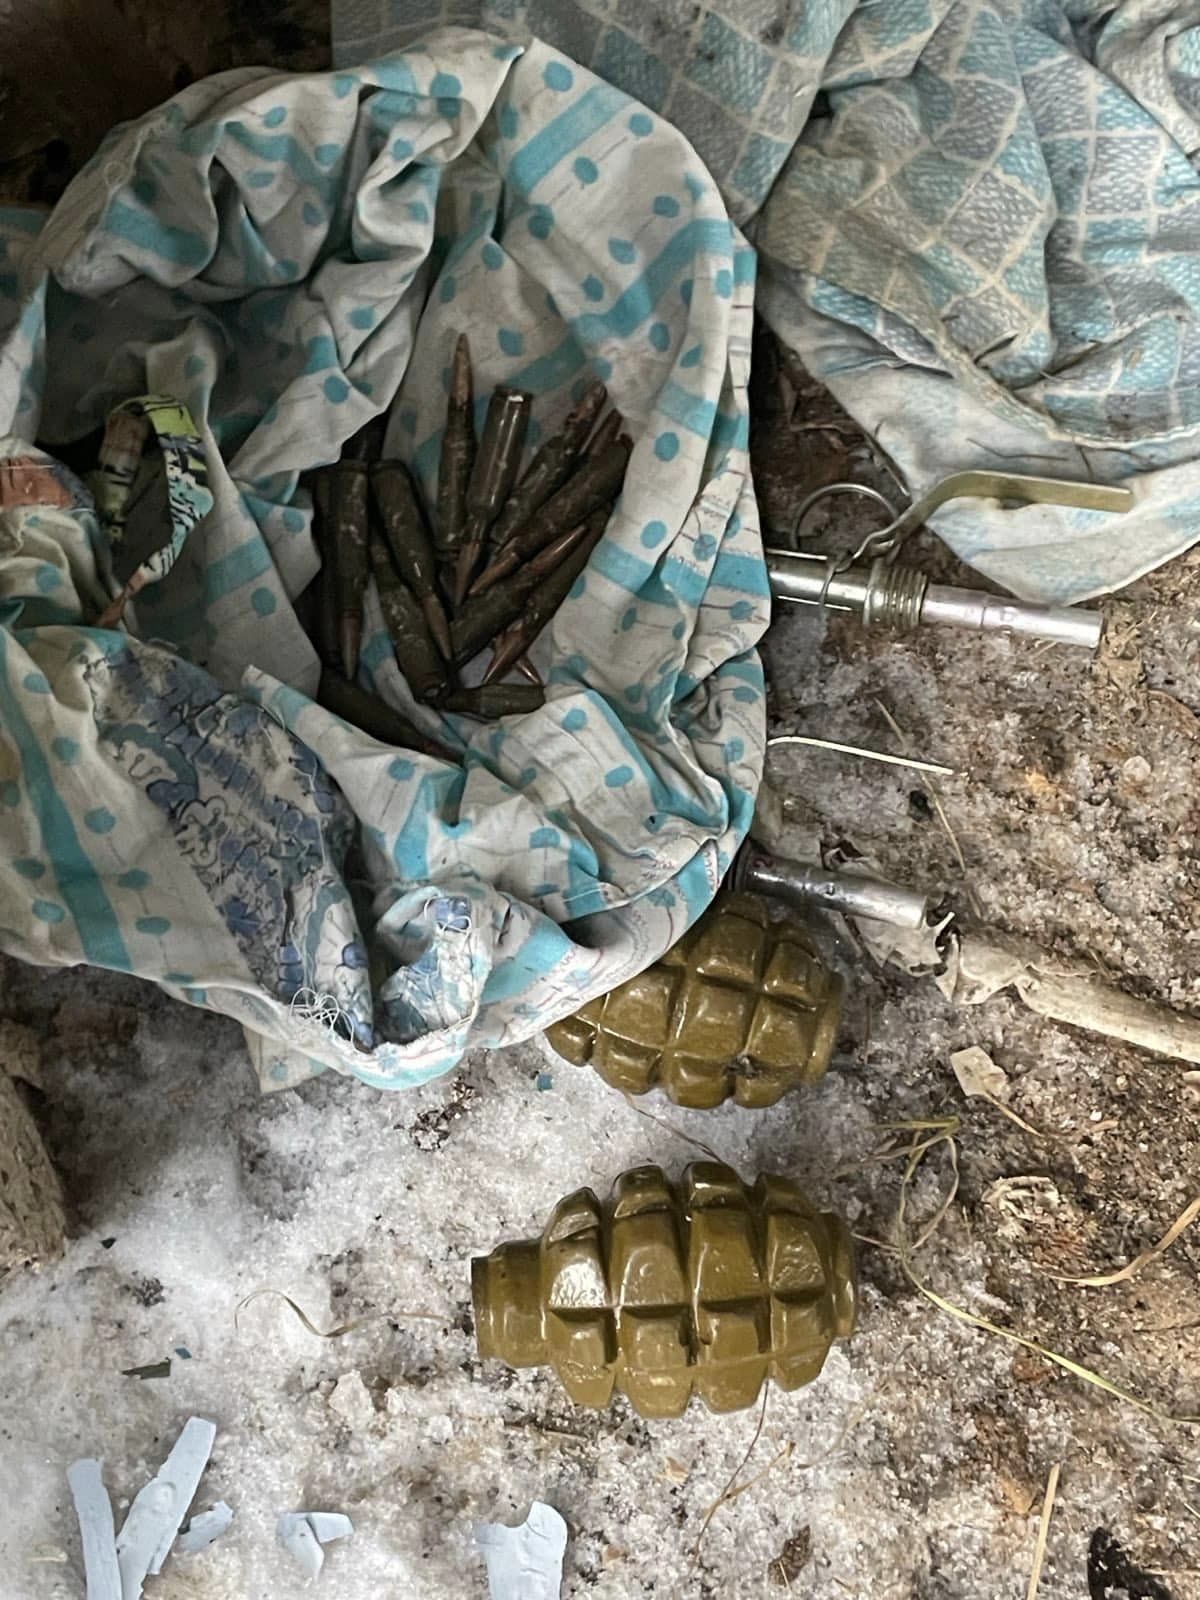 Гранатомети, кулемети та автомати: на Чернігівщині у селі виявили схрон зі зброєю та боєприпасами.ФОТО